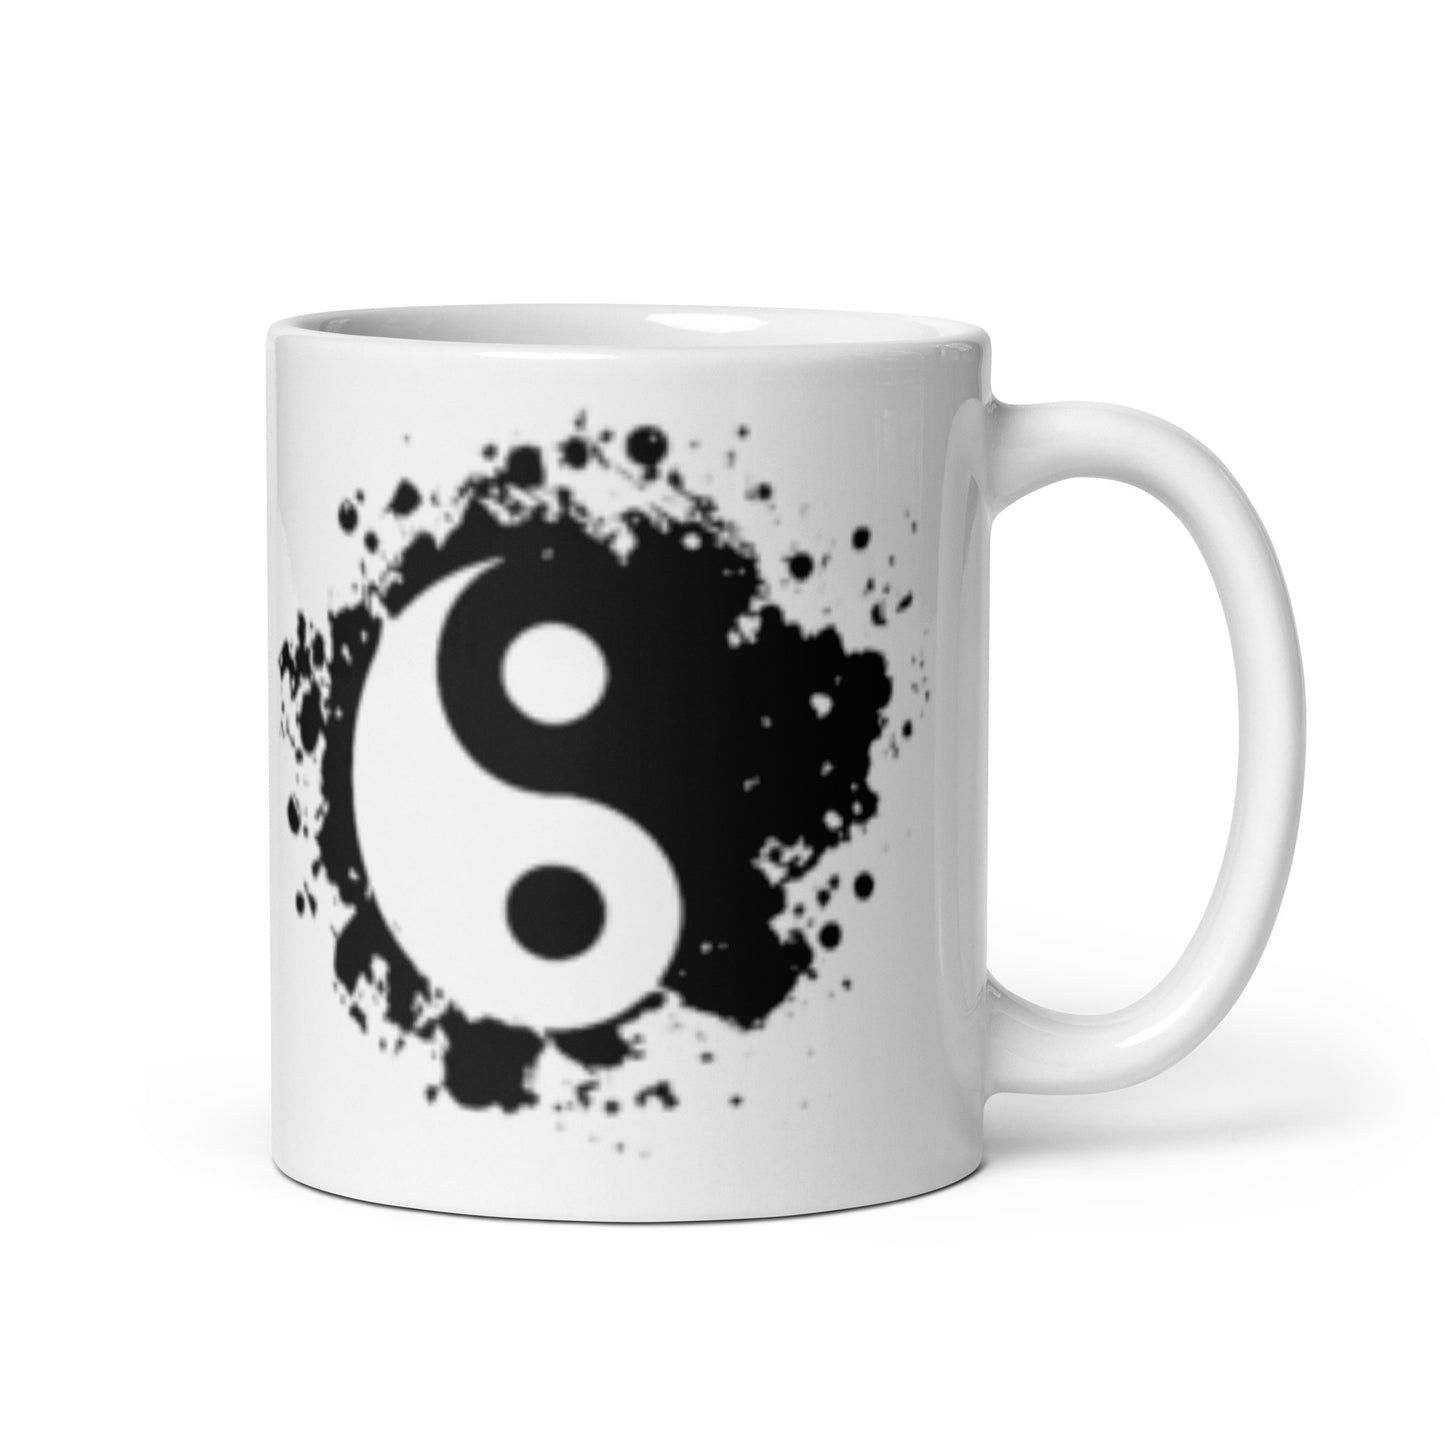 Yin&Yang, mug